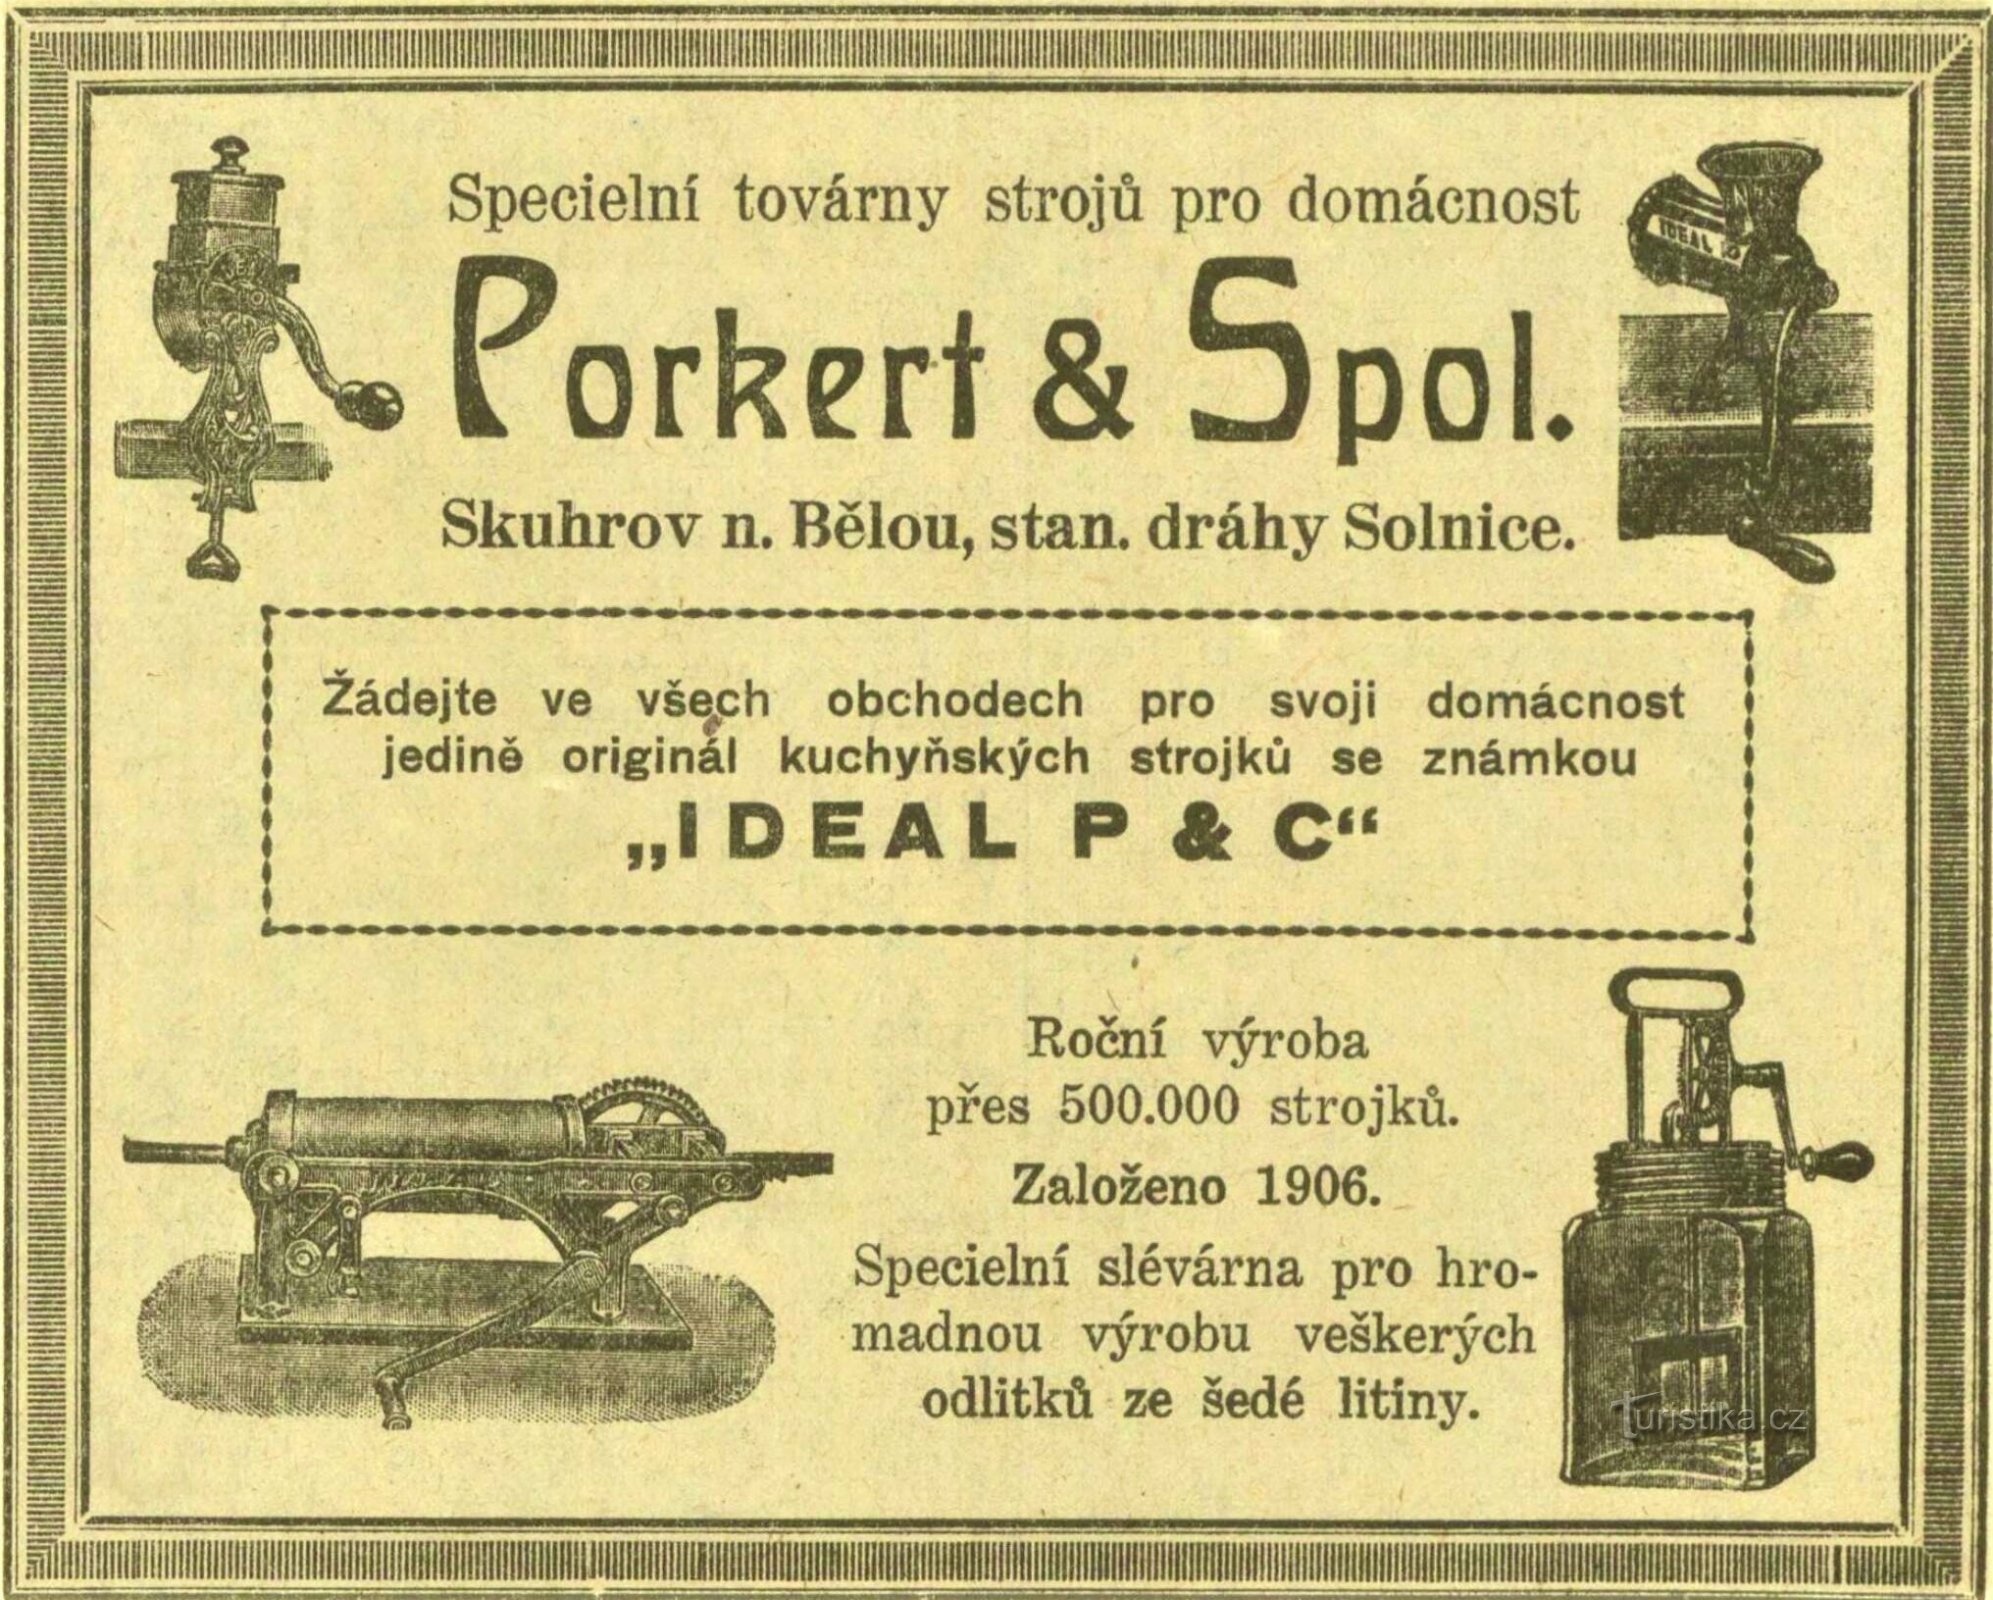 Старинная реклама фабрики Porkert в Скугро-над-Белоу 1930 г.